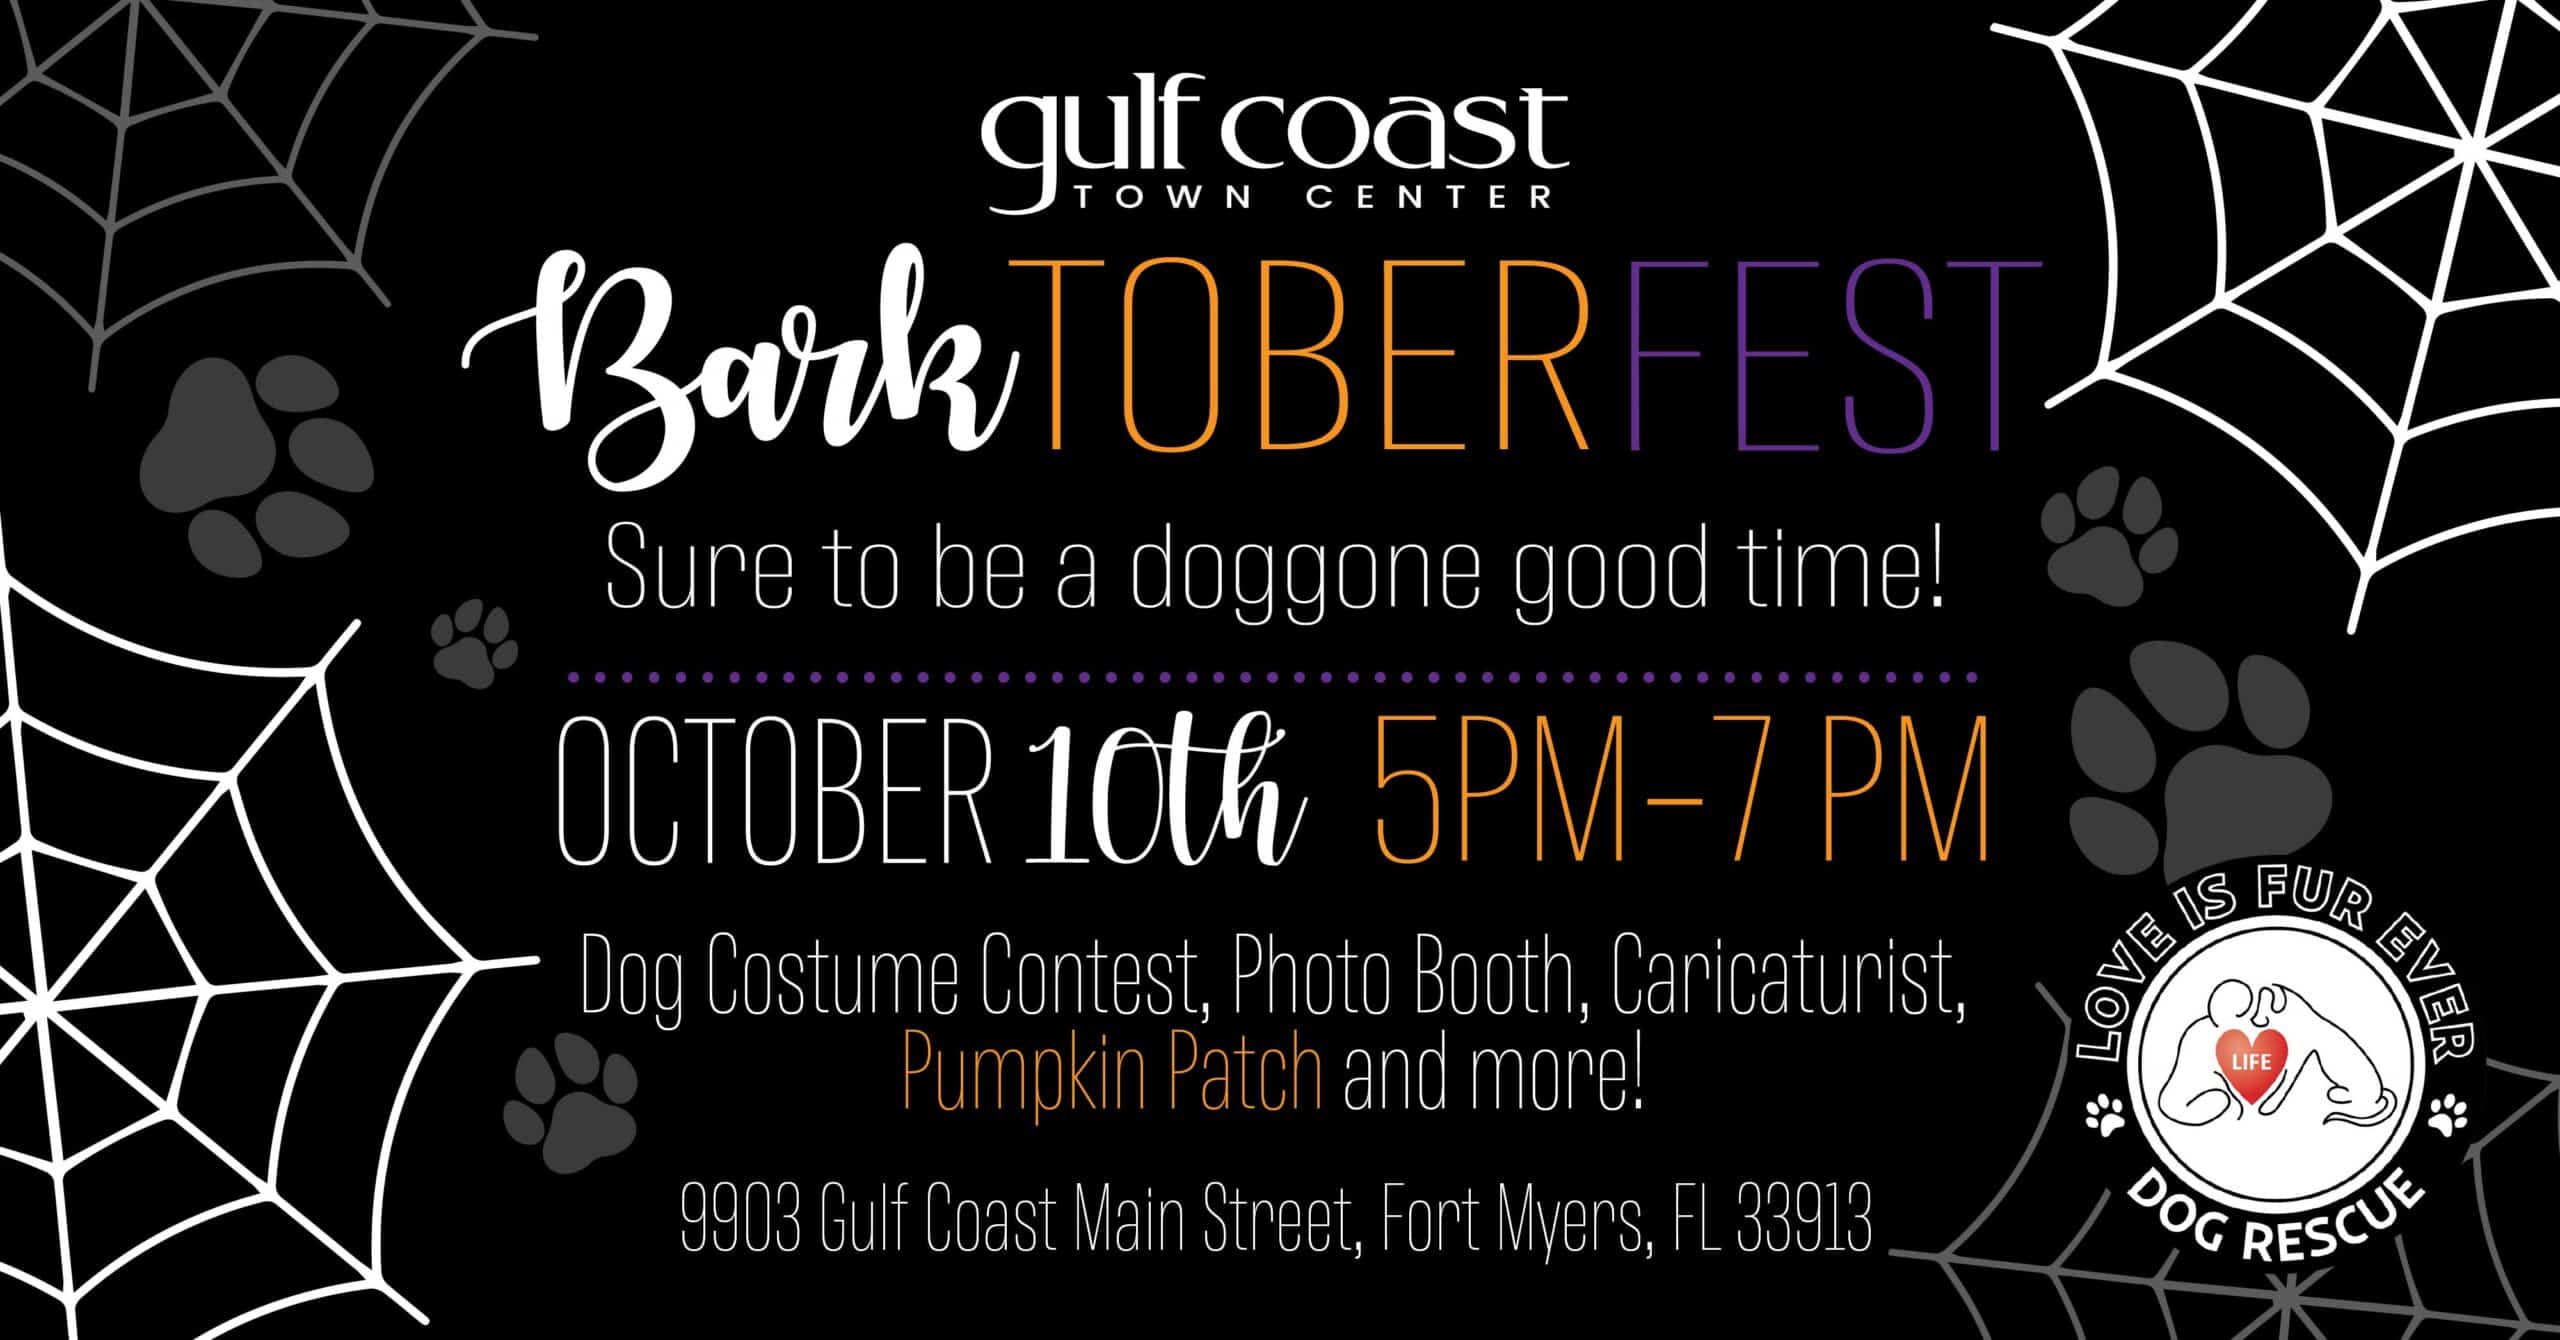 Barktober Fest - Gulf Coast Town Center